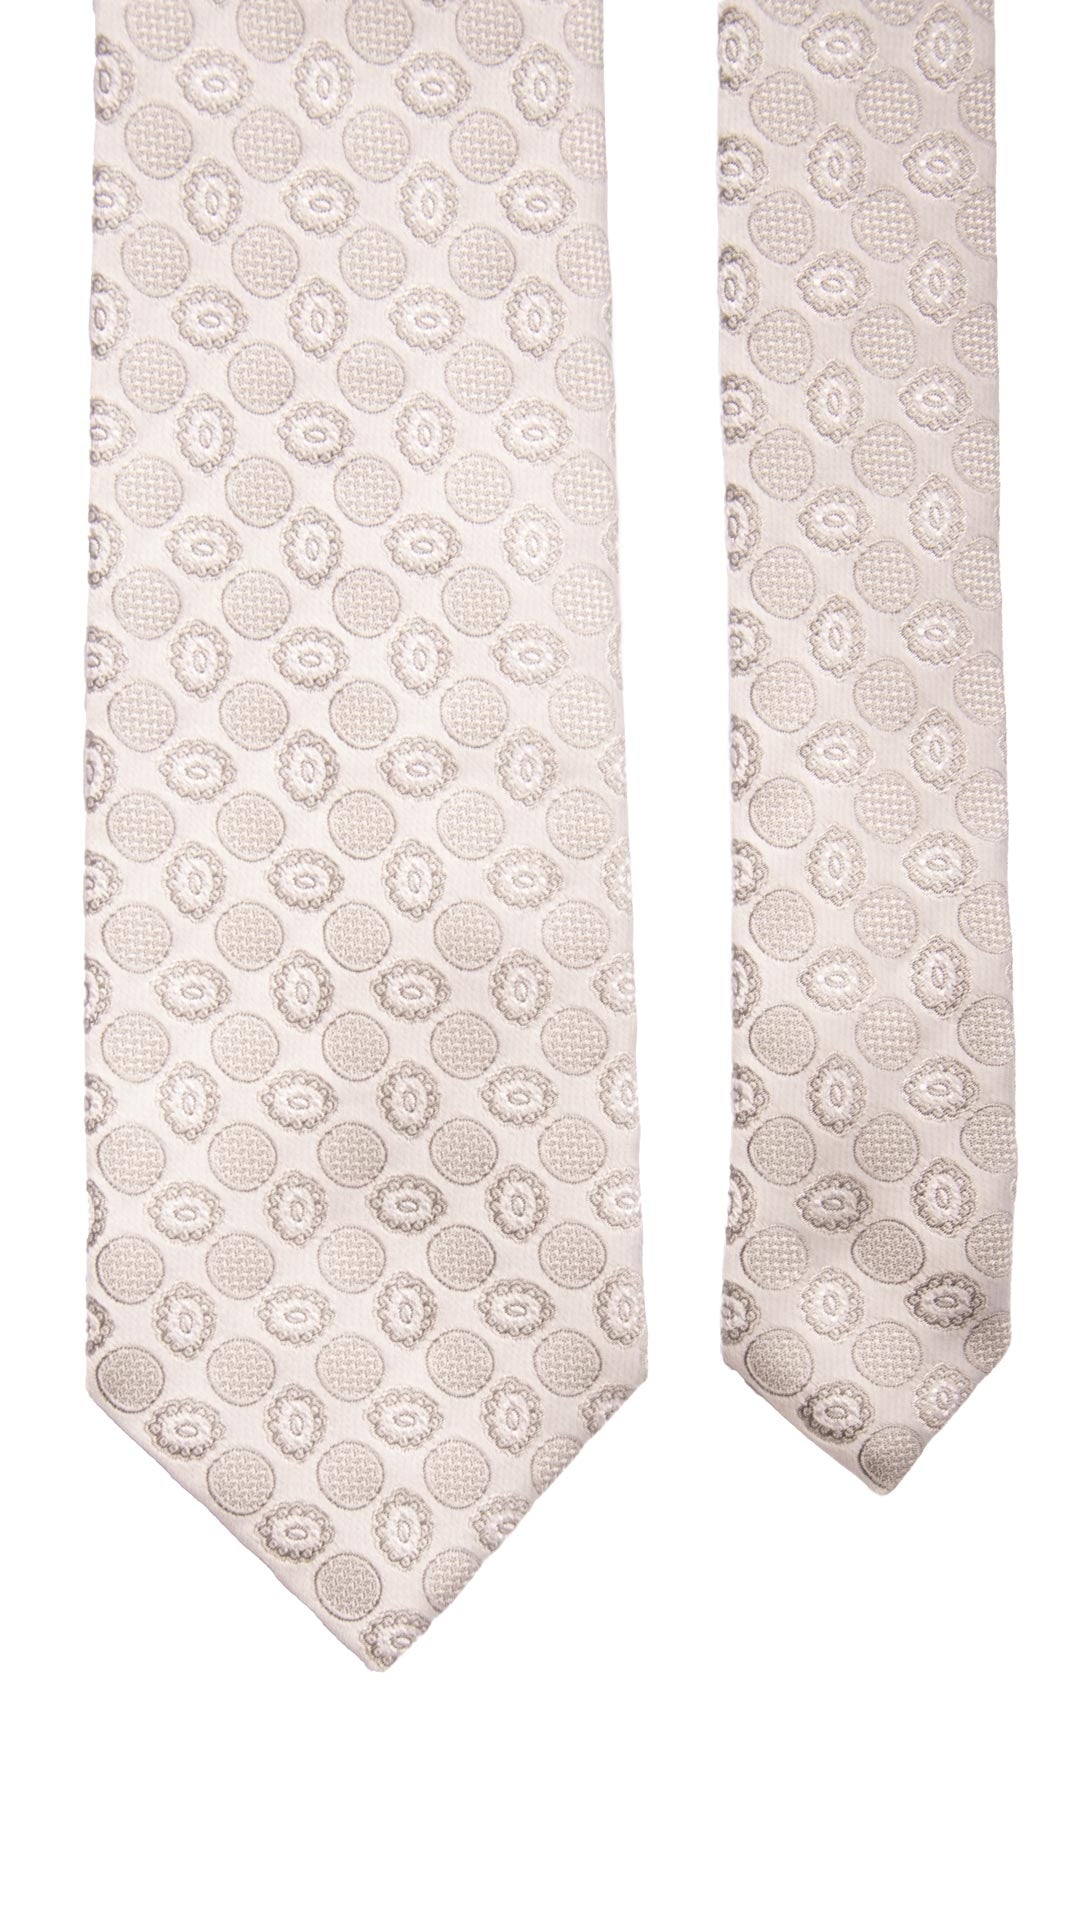 Cravatta da Cerimonia di Seta Grigio Argento Fantasia Tono su Tono Made in Italy Graffeo Cravatte Pala